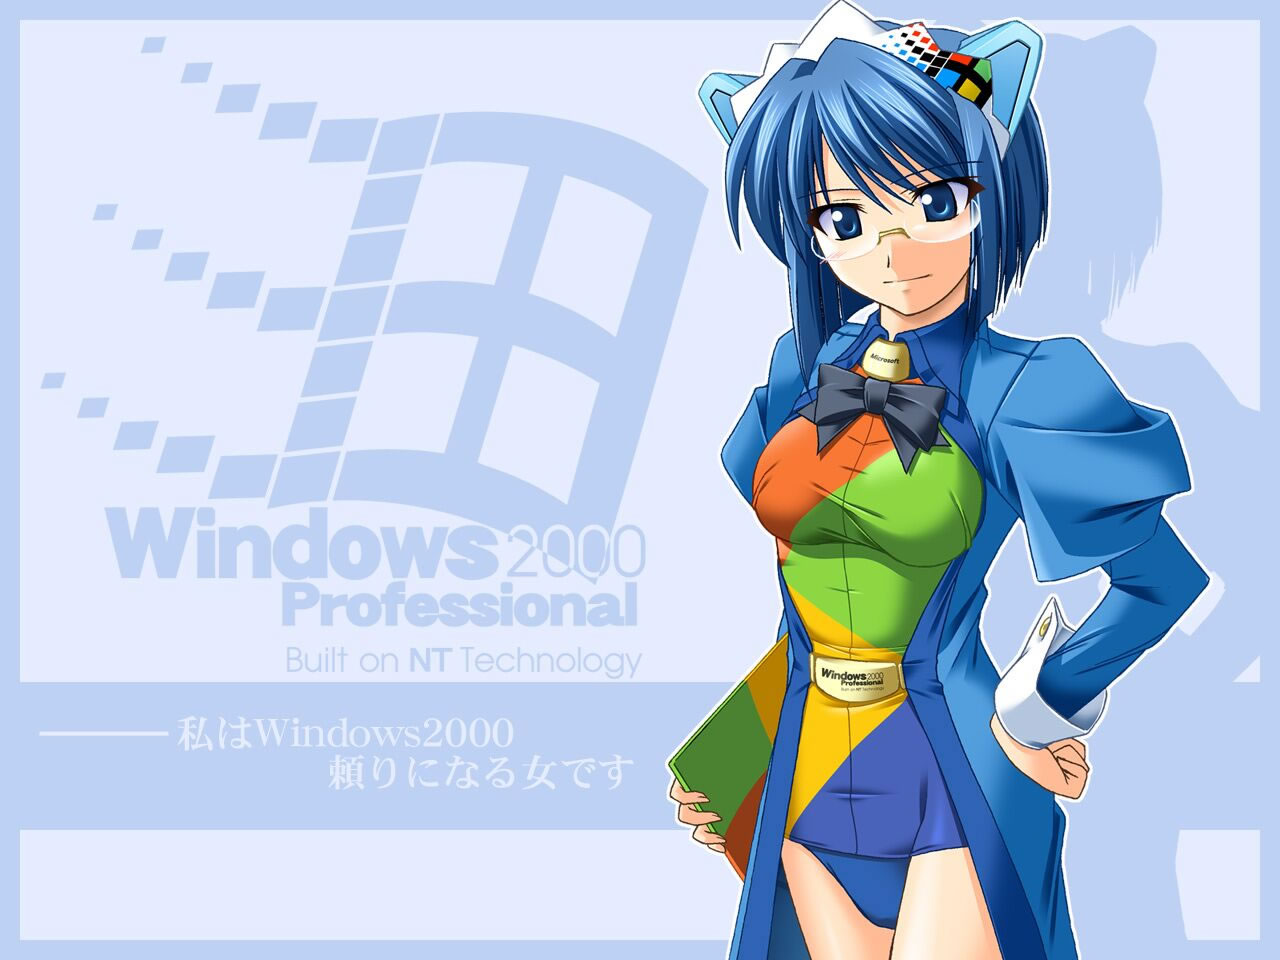 Fuentes De Informaci N Wallpaper Chicas Anime Windows Os Tan